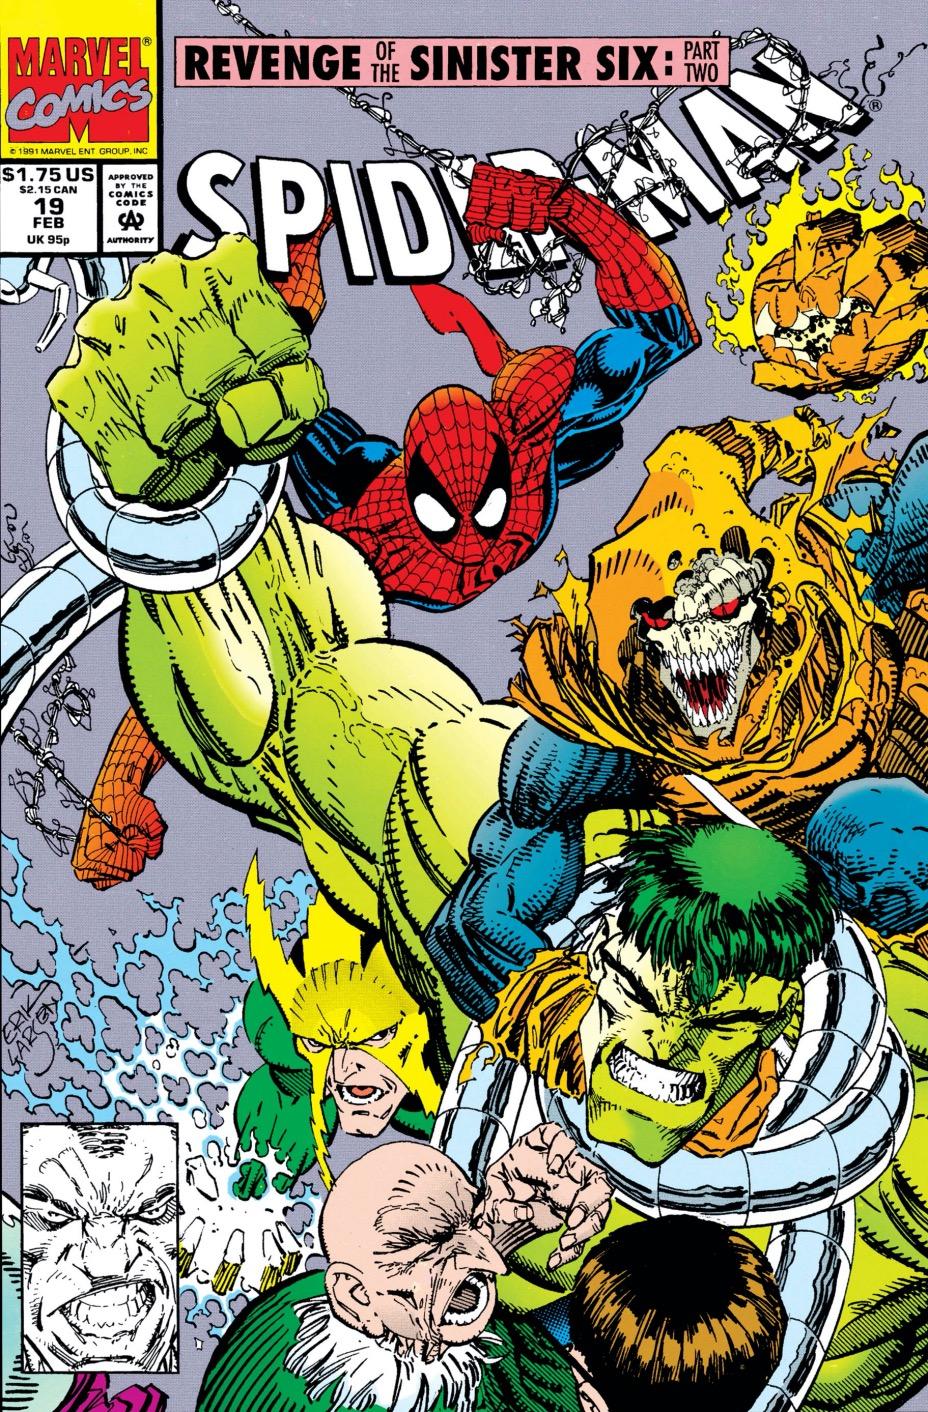 spider-man-revenge-of-the-sinister-six.jpg